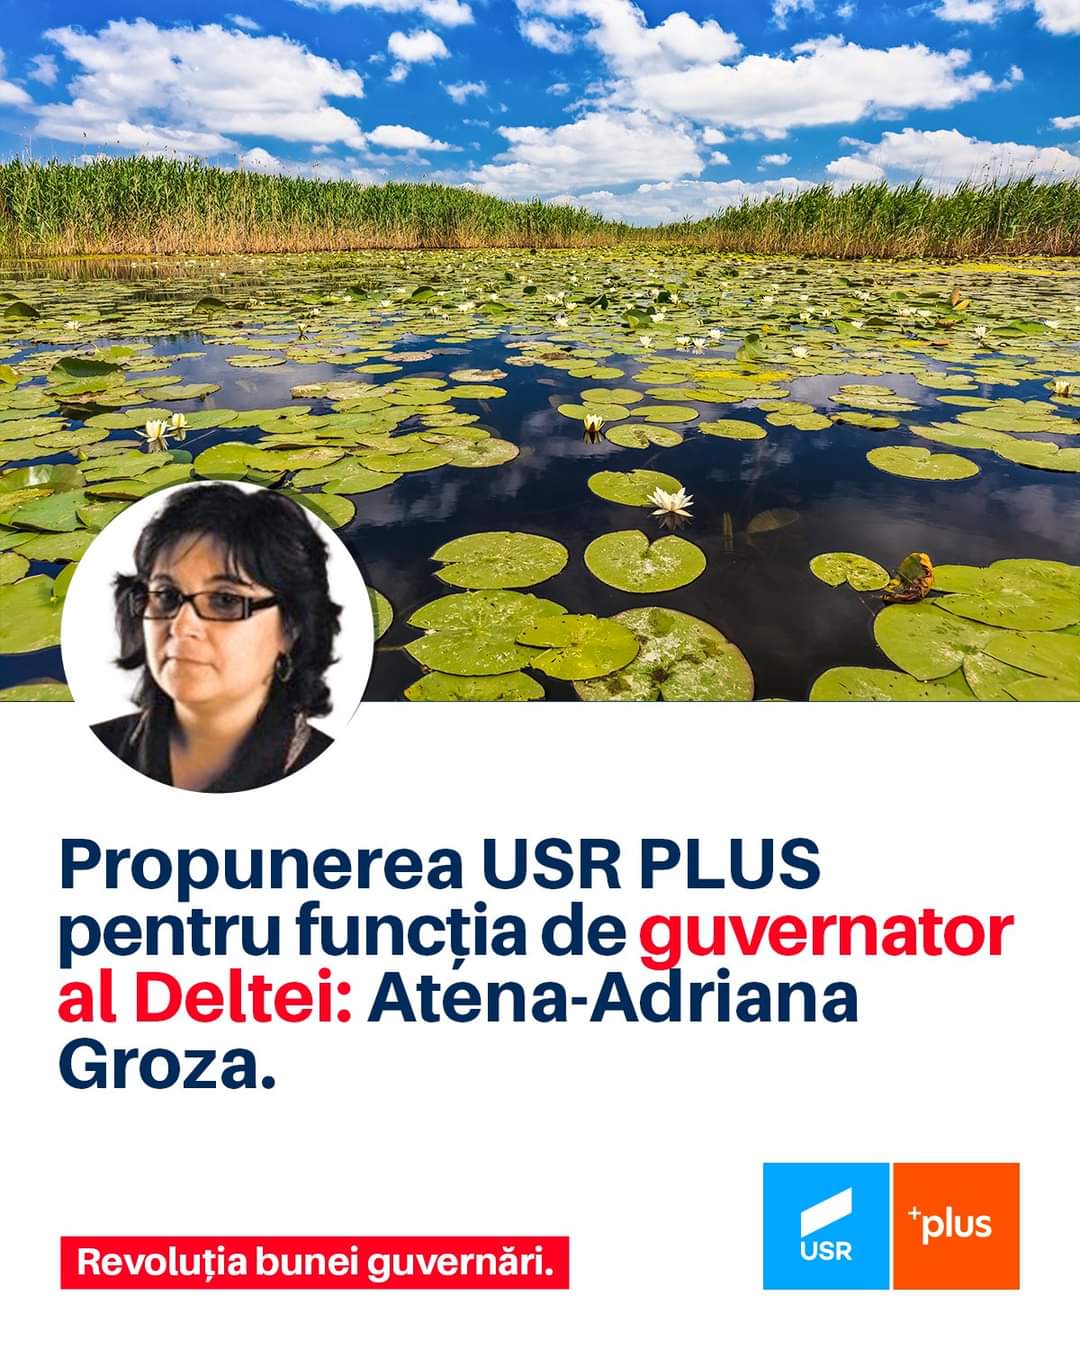 Atena-Adriana Groza, de la un ONG din București, este noul guvernator al Deltei!